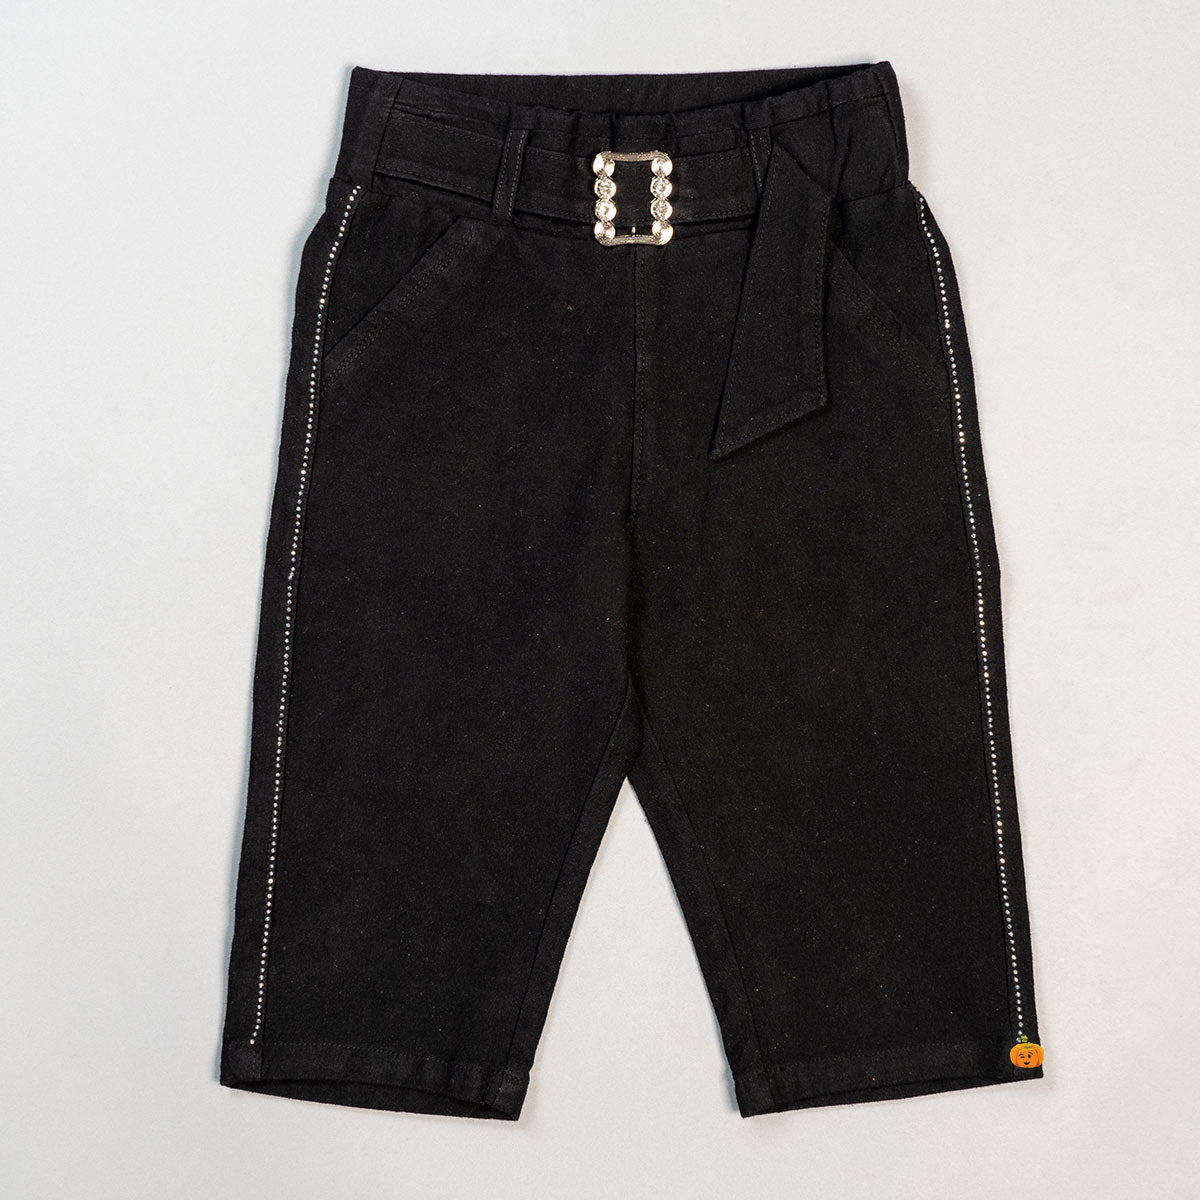 Capri Pants for Women Cotton Linen Plus Size Cargo Pants Capris Elastic  High Waisted 3/4 Slacks with Multi Pockets (5X-Large, Black) - Walmart.com